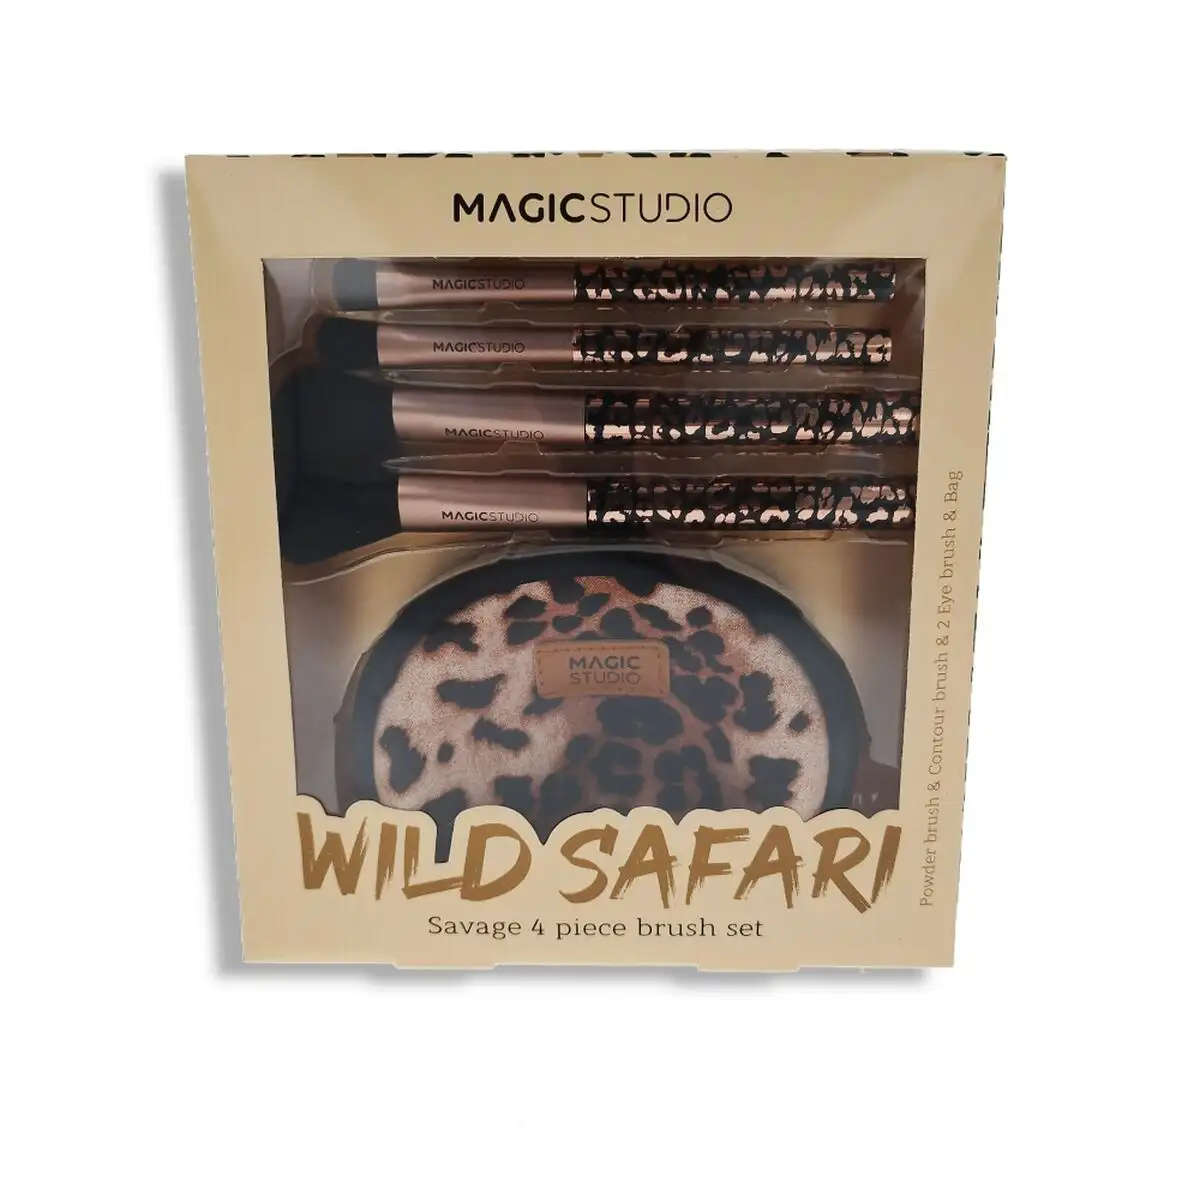 Kit de broche de maquillage magic studio wild safari savage 4 pieces_6012. Entrez dans l'Univers de DIAYTAR SENEGAL - Où Chaque Produit est une Découverte. Explorez notre gamme variée et trouvez des articles qui vous surprennent et vous inspirent.